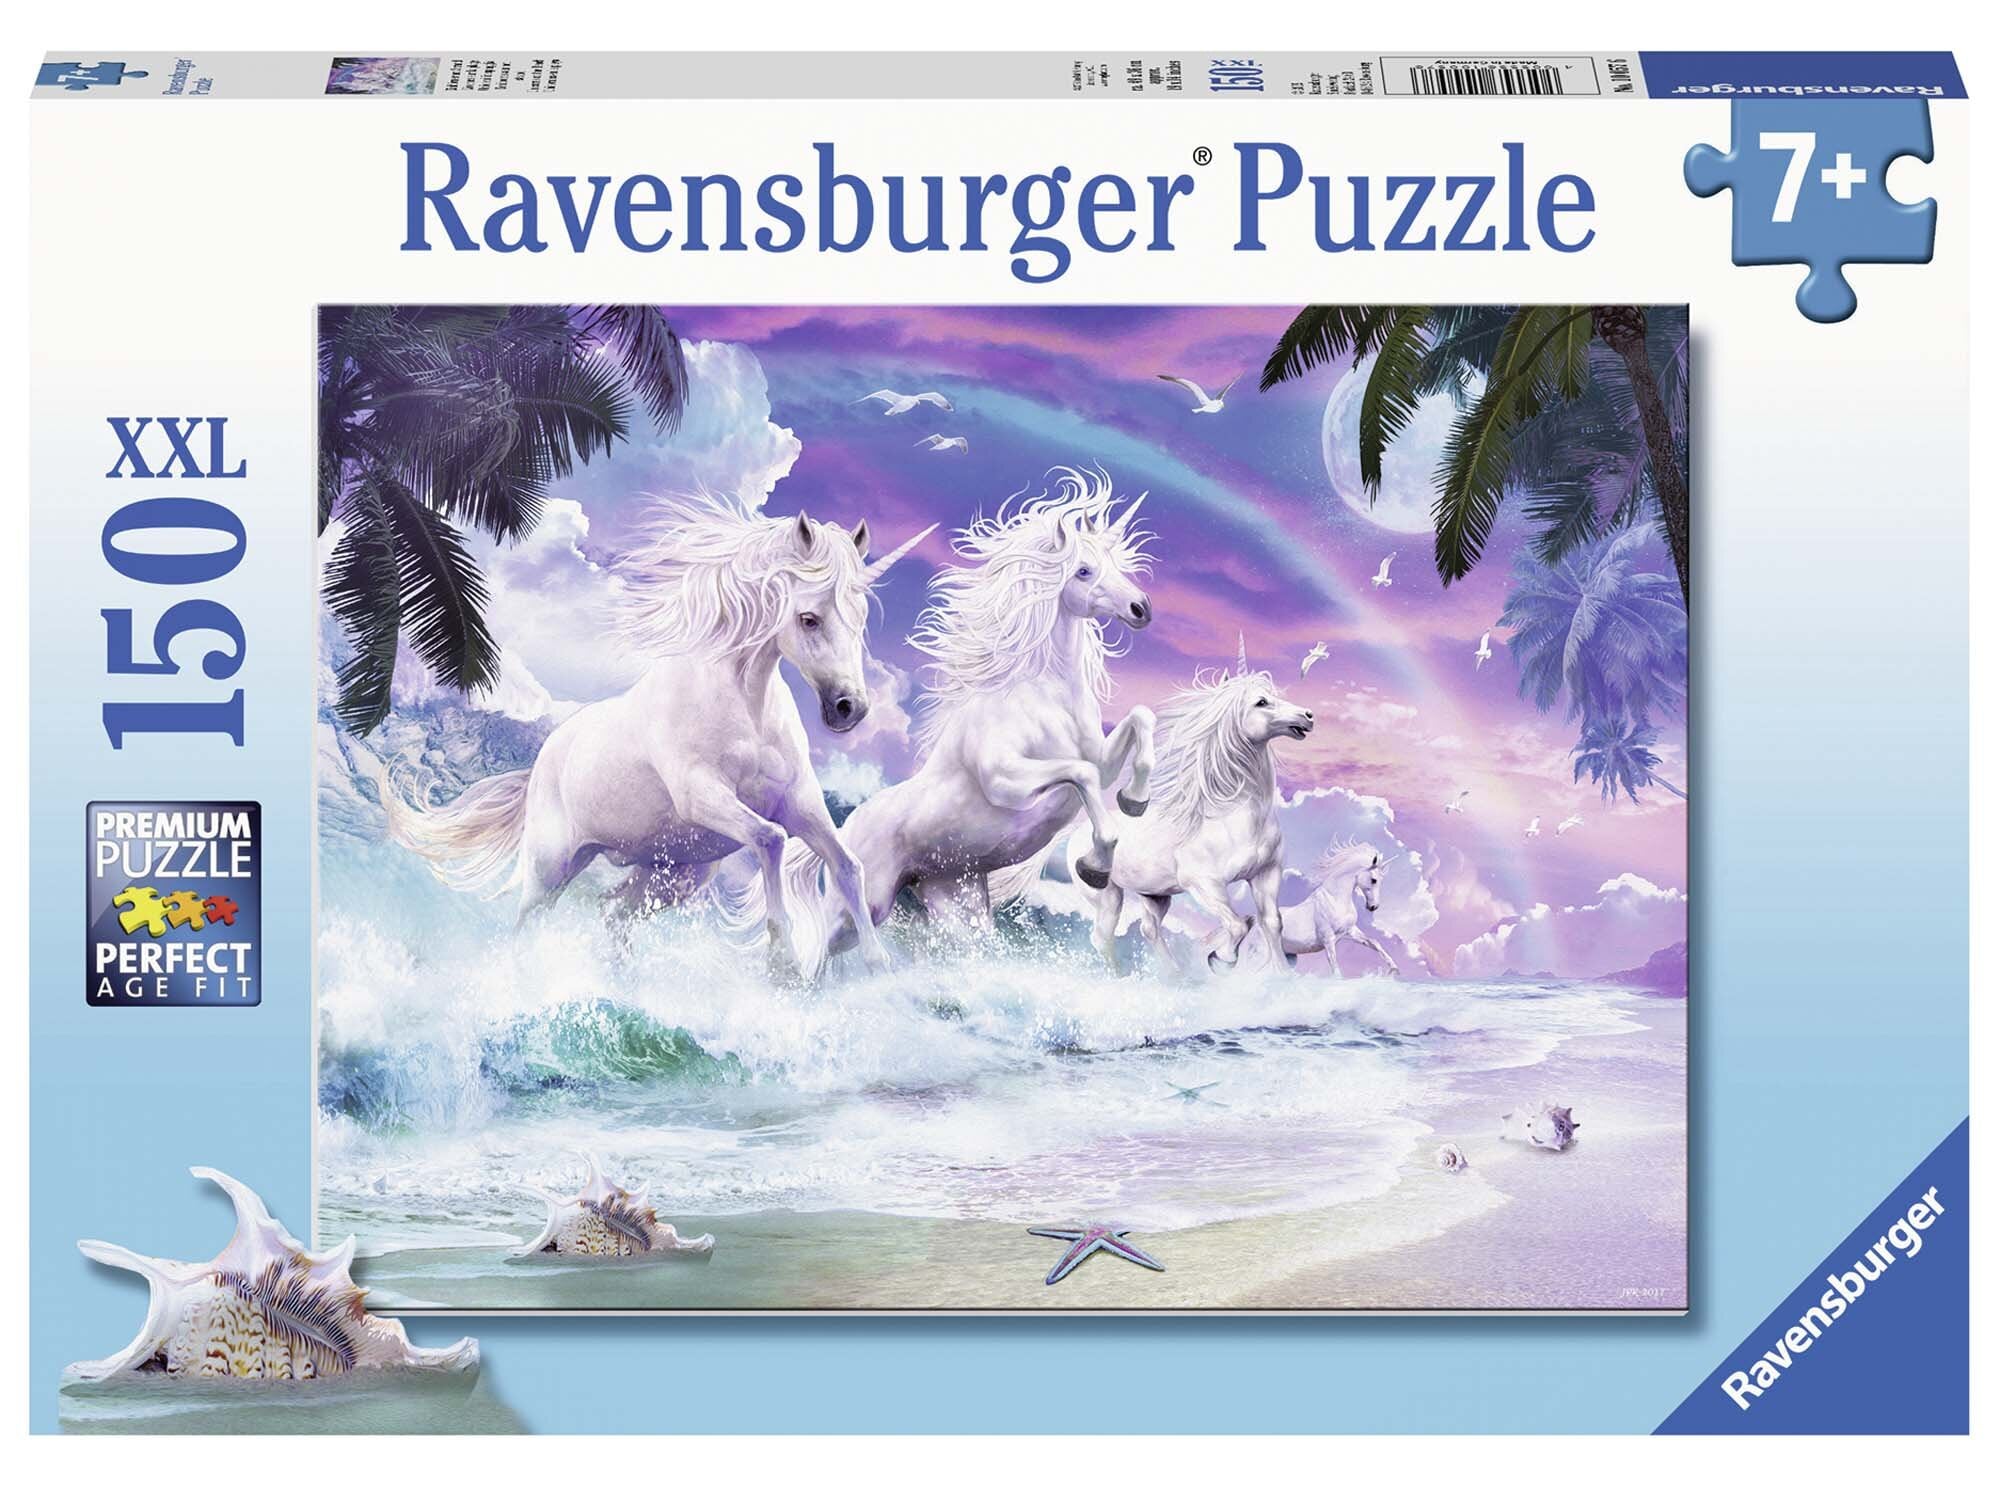 Ravensburger Puzzle - Einhörner am Strand 150 Teile XXL